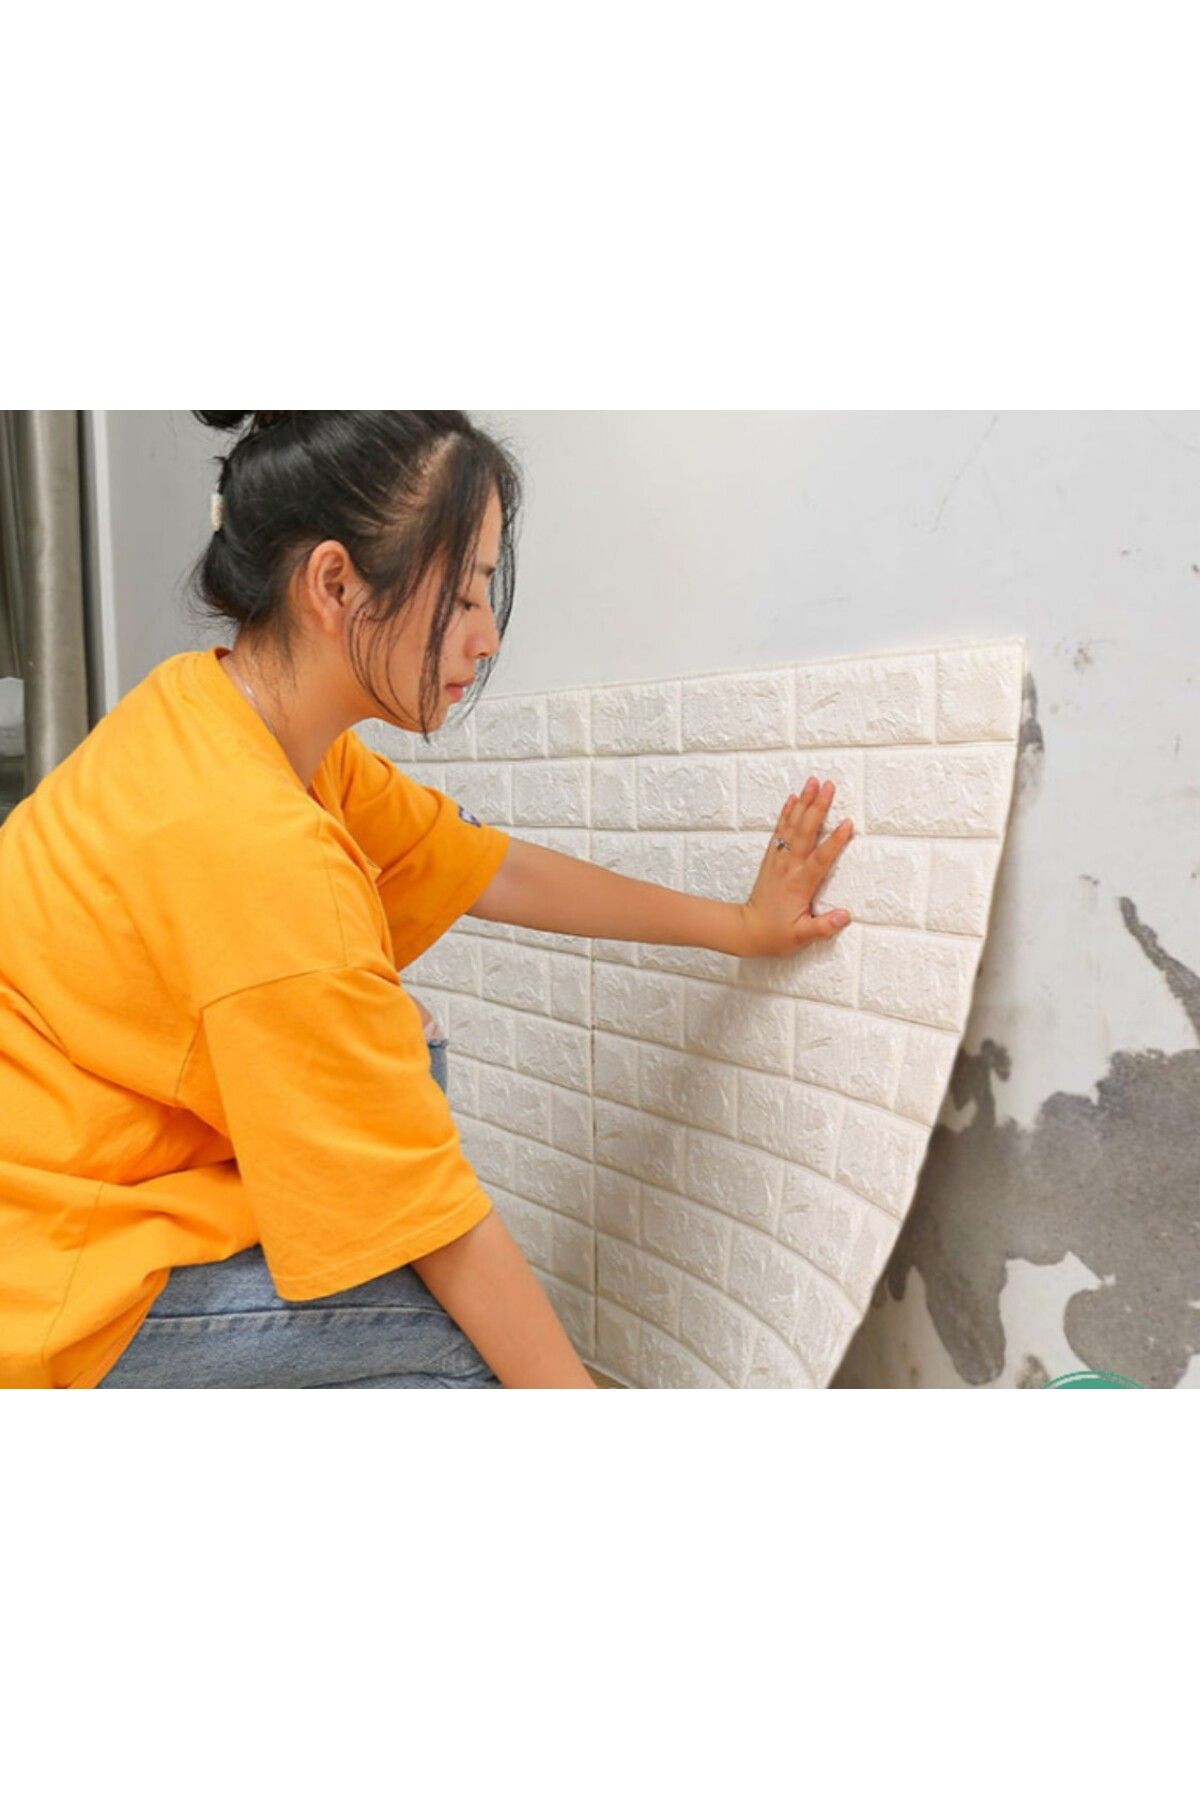 Renkli Duvarlar 70x77cm 1 Adet Silinebilir Taş Tuğla Desenli Kendinden Yapışkanlı Sünger Duvar Kağıdı Paneli